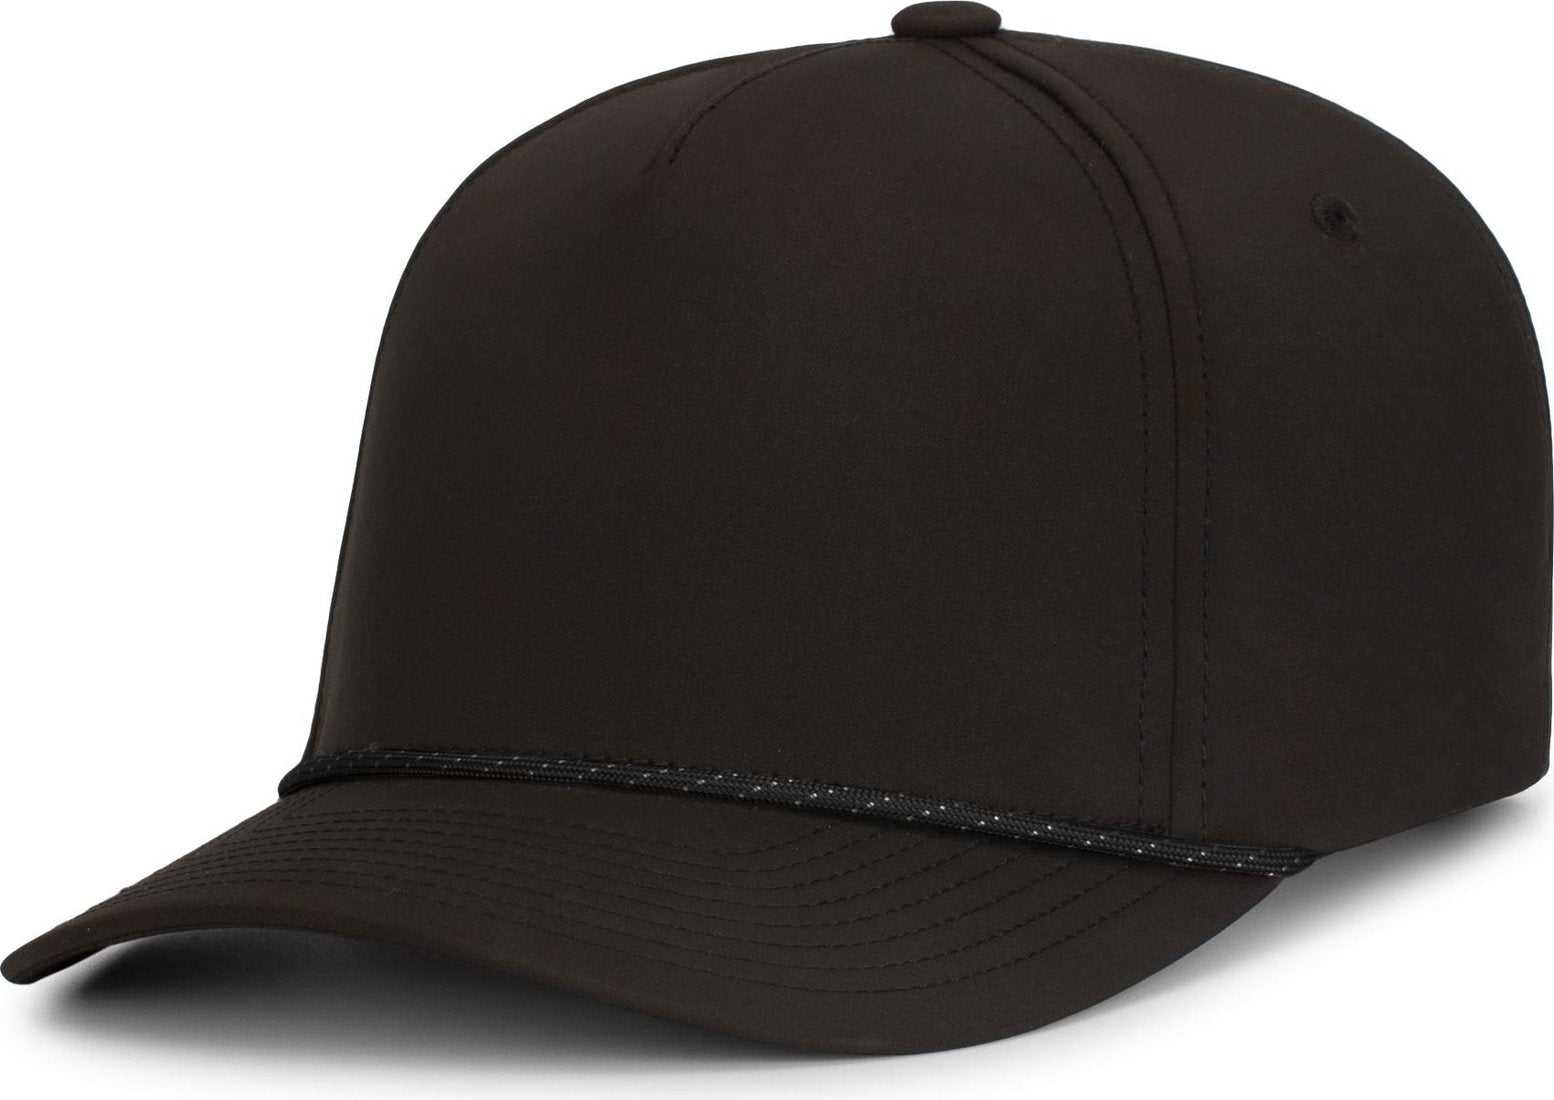 Pacific Headwear P421 Weekender Cap - Black Black White